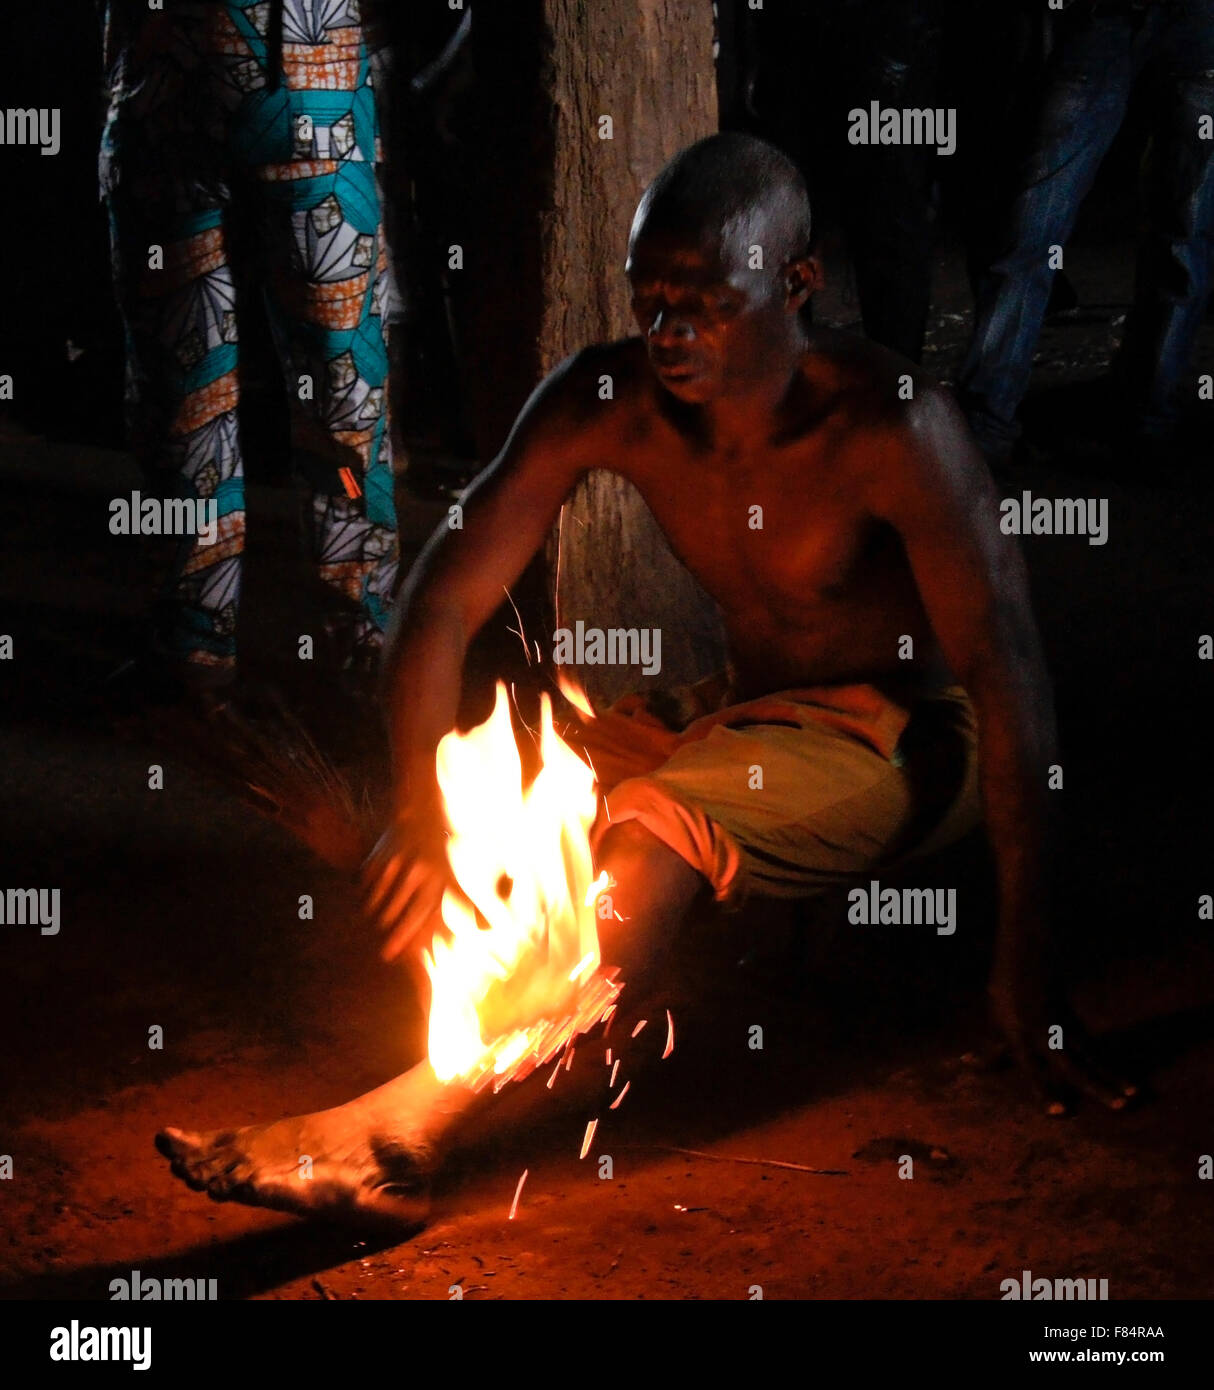 Man passing fire over leg at Bassare T'Bol fire dance, Sokodé, Togo Stock Photo